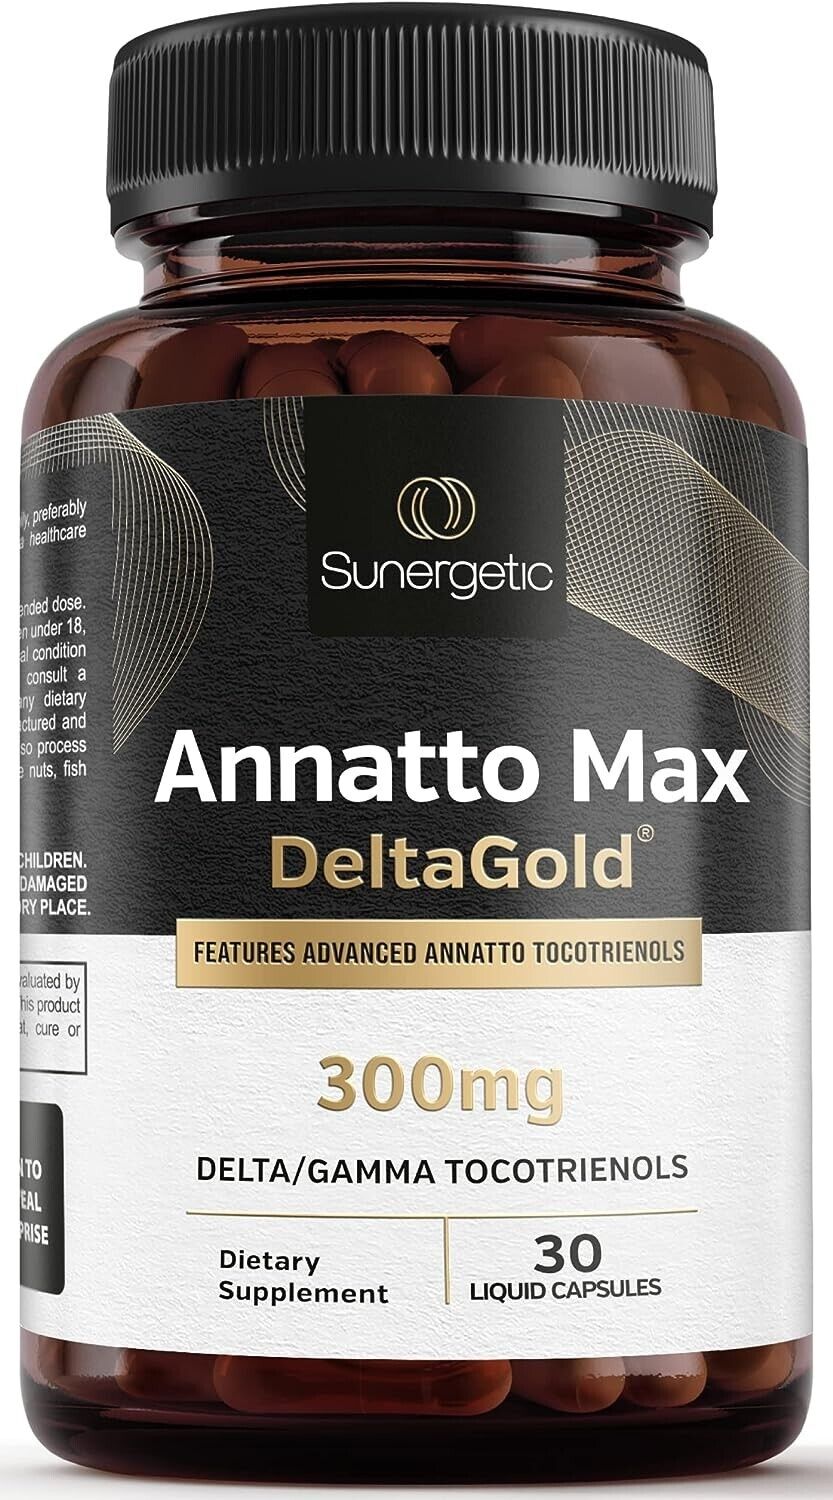 Premium Annatto Tocotrienol Supplement – Vitamin E Tocotrienols with Deltagold –